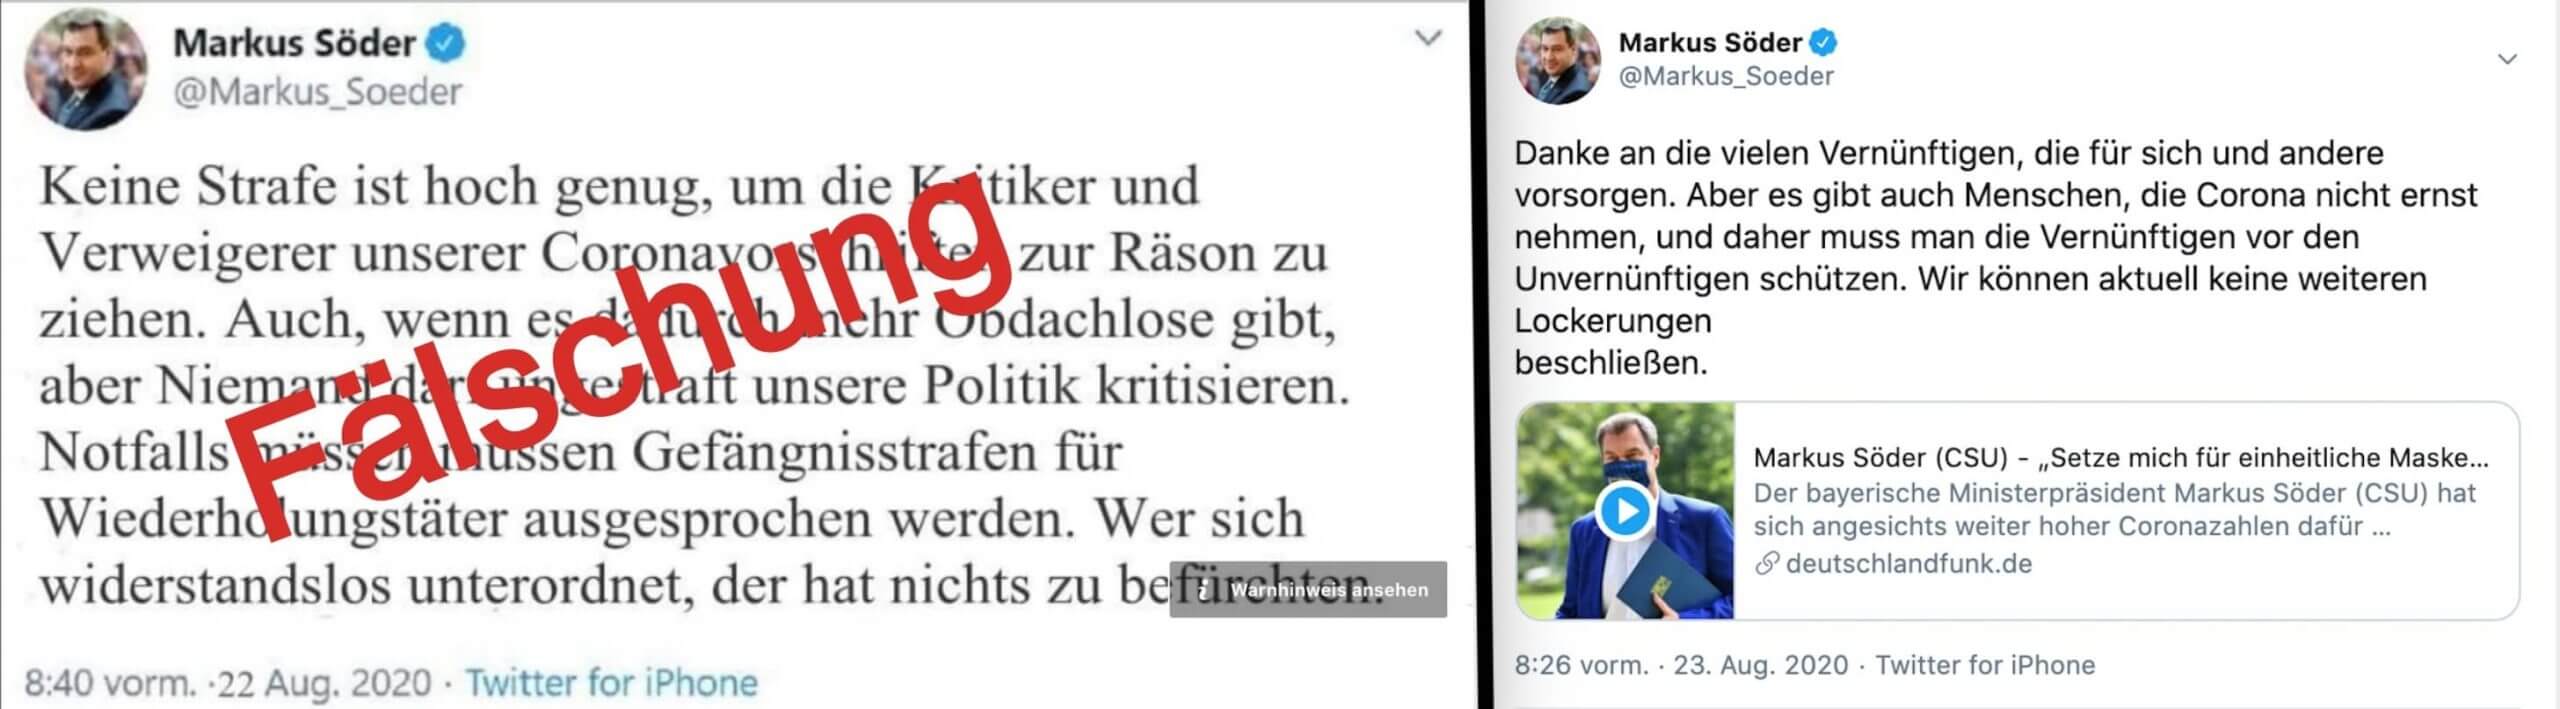 Links der gefälschte Tweet von Markus Söder, rechts zum Vergleich ein echter Tweet. 